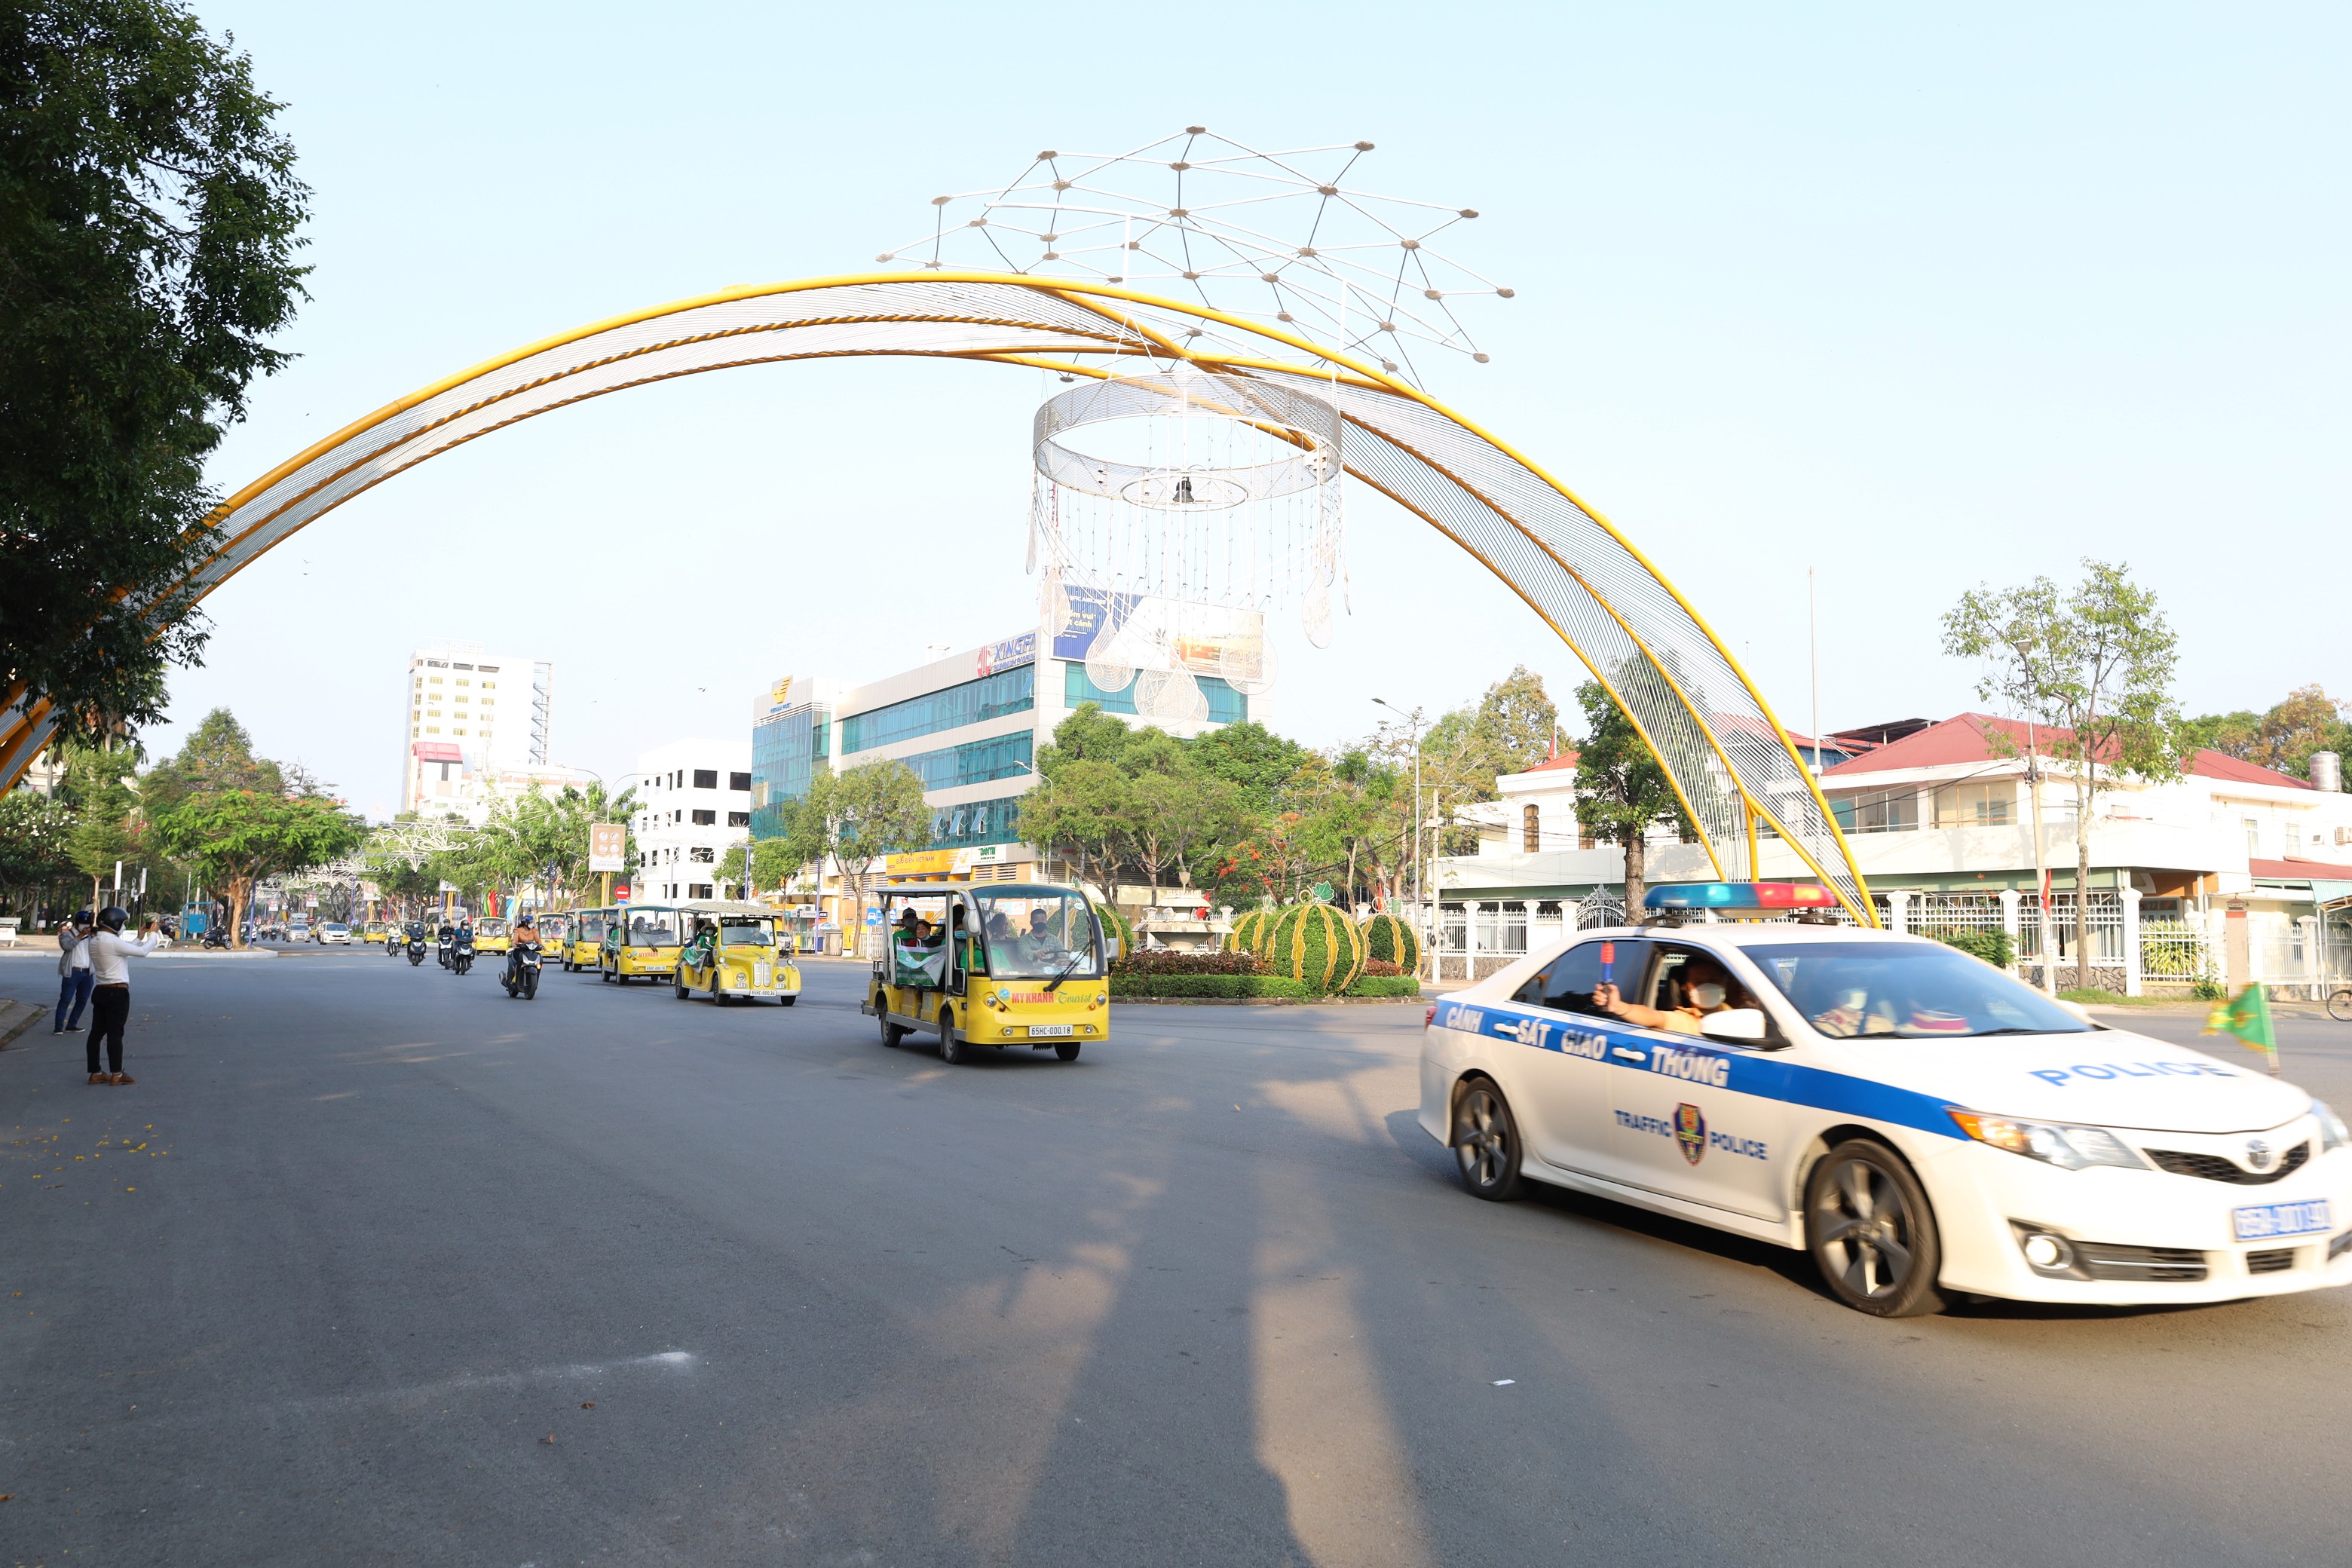 Hội Người khuyết tật TP. Cần Thơ diễu hành bằng xe điện từ trụ sở Hội đến dâng hương tượng đài Chủ tịch Hồ Chí Minh tại Bến Ninh Kiều.